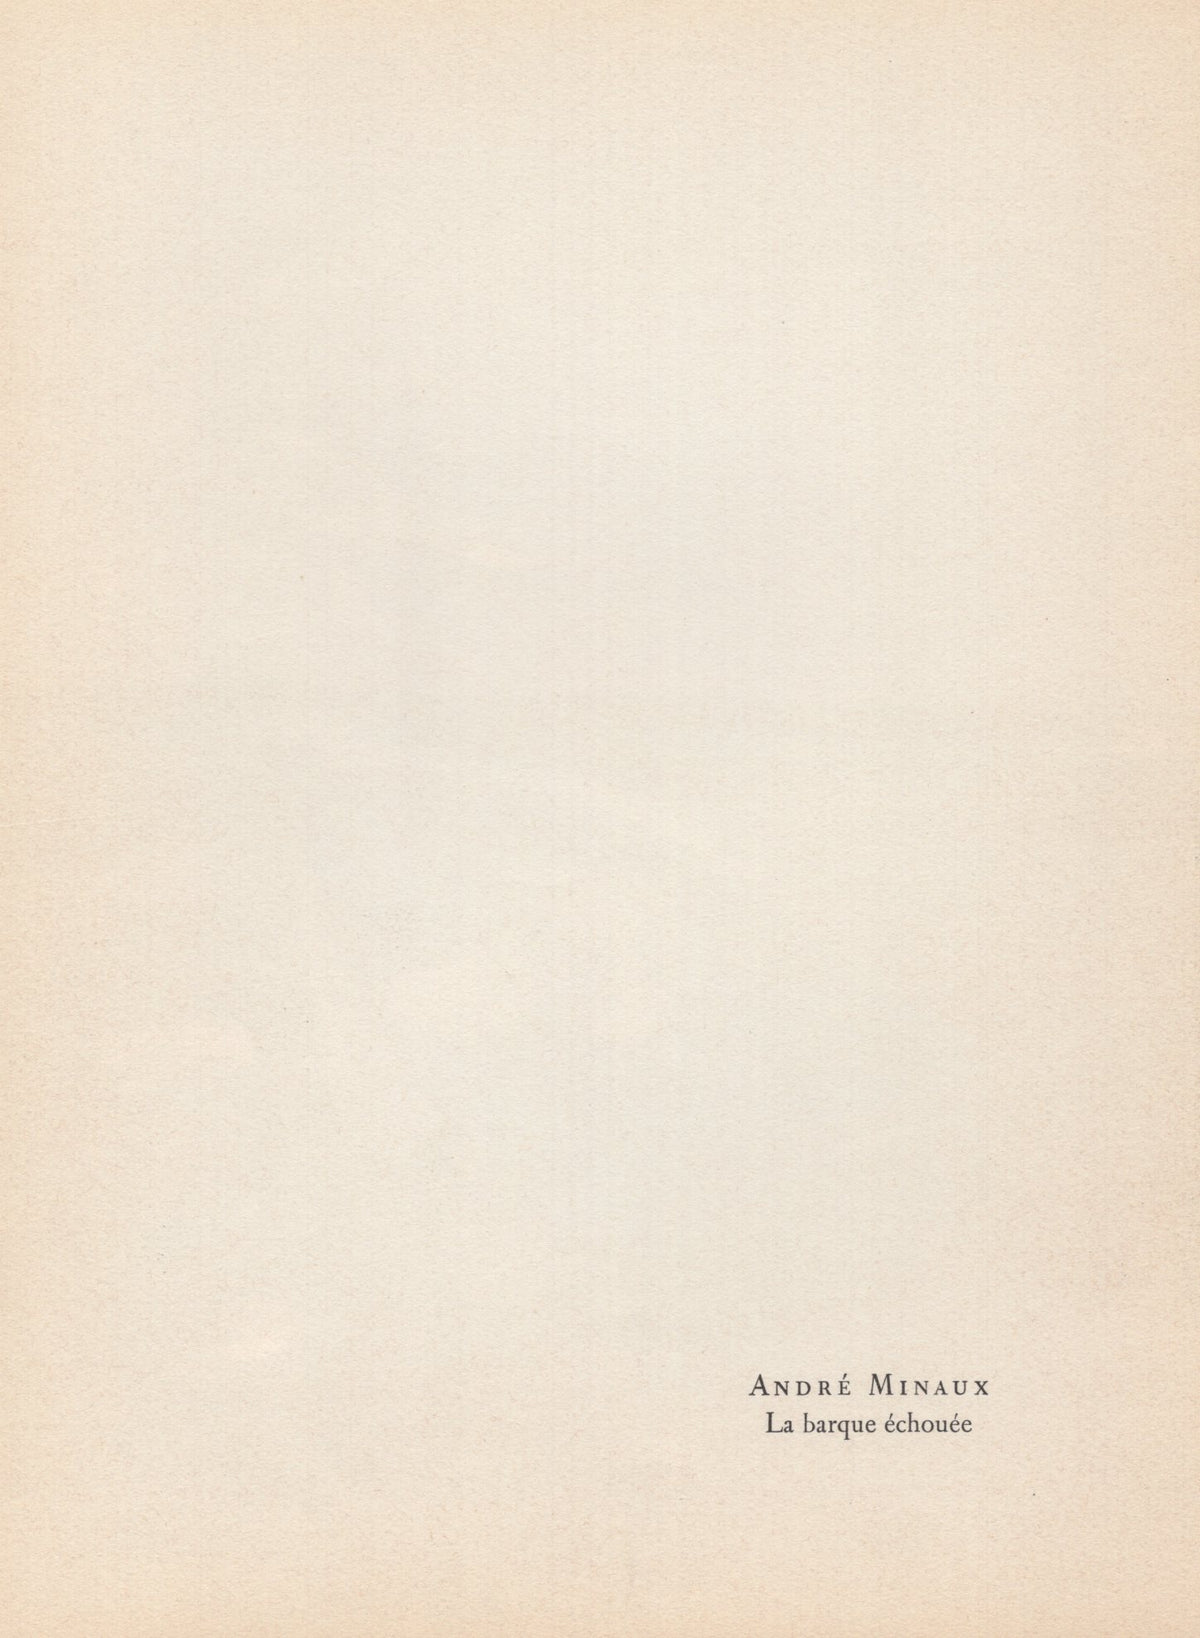 Andre Minaux - &quot;La barque echouee&quot; - Mourlot Press 1964 Lithograph - 7.5 x 10&quot;